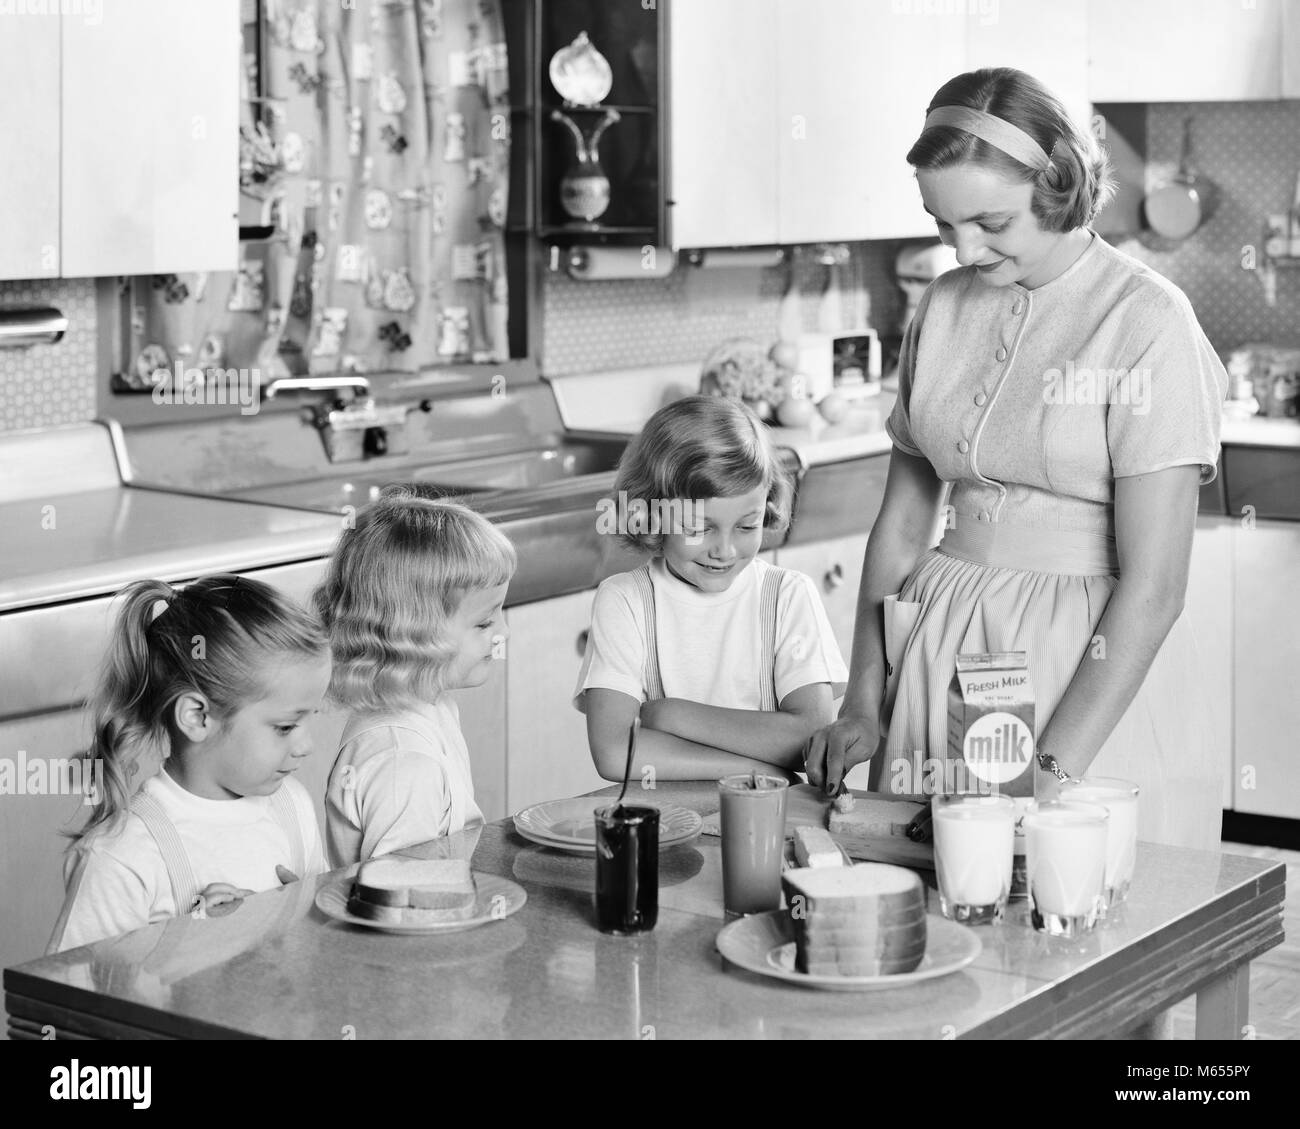 1950 Mère & trois filles debout à une table de cuisine faire déjeuner Peanut Butter & JELLY SANDWICHES & verres de lait - asp x16746 CAM001 HARS 1 SOEUR AMI BLOND juvénile de filles de race blanche des SANDWICHS SANTÉ ACCUEIL VIE COPIE Espace demi-longueur d'AMITIÉ Mesdames filles occupent l'INTÉRIEUR DE BEURRE FRÈRES SOEURS NOSTALGIE UNITÉ 30-35 ans 35-40 ans 7-9 ans 5-6 ans femme au foyer le bonheur des ménagères ménagères croissance mamans d'enfant de l'ARACHIDE PETIT GROUPE DE PERSONNES MINEURS MID-ADULT WOMAN FEMME B&W NOIR ET BLANC à l'ANCIENNE gelée de l'origine ethnique caucasienne PBJ PERSONNES beurre de cacahuète Banque D'Images